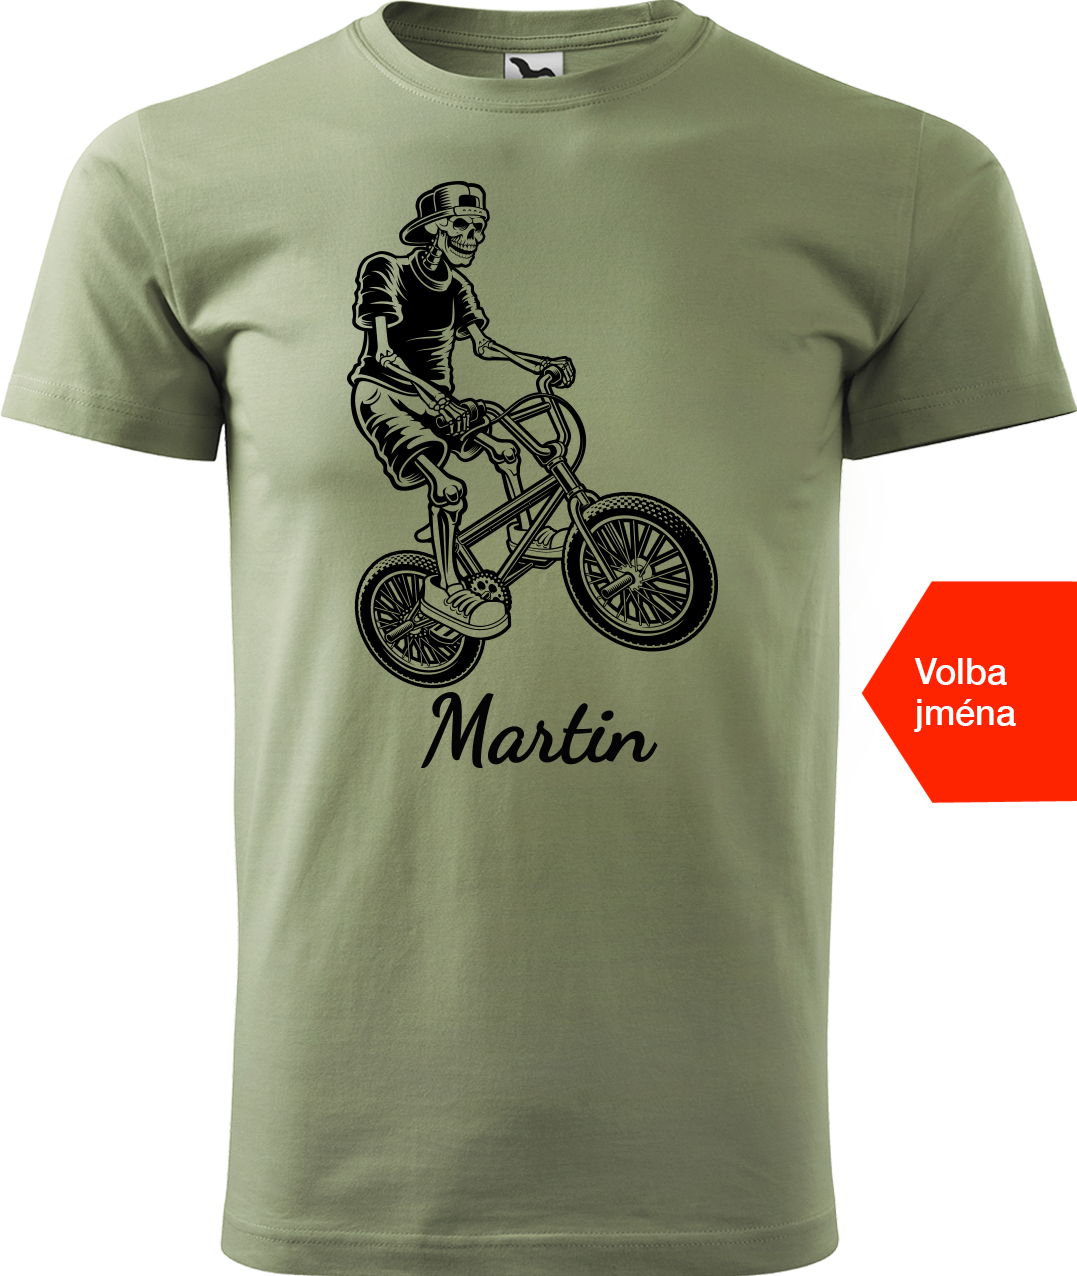 Pánské tričko s kolem a jménem - Trial Bike Velikost: L, Barva: Světlá khaki (28)